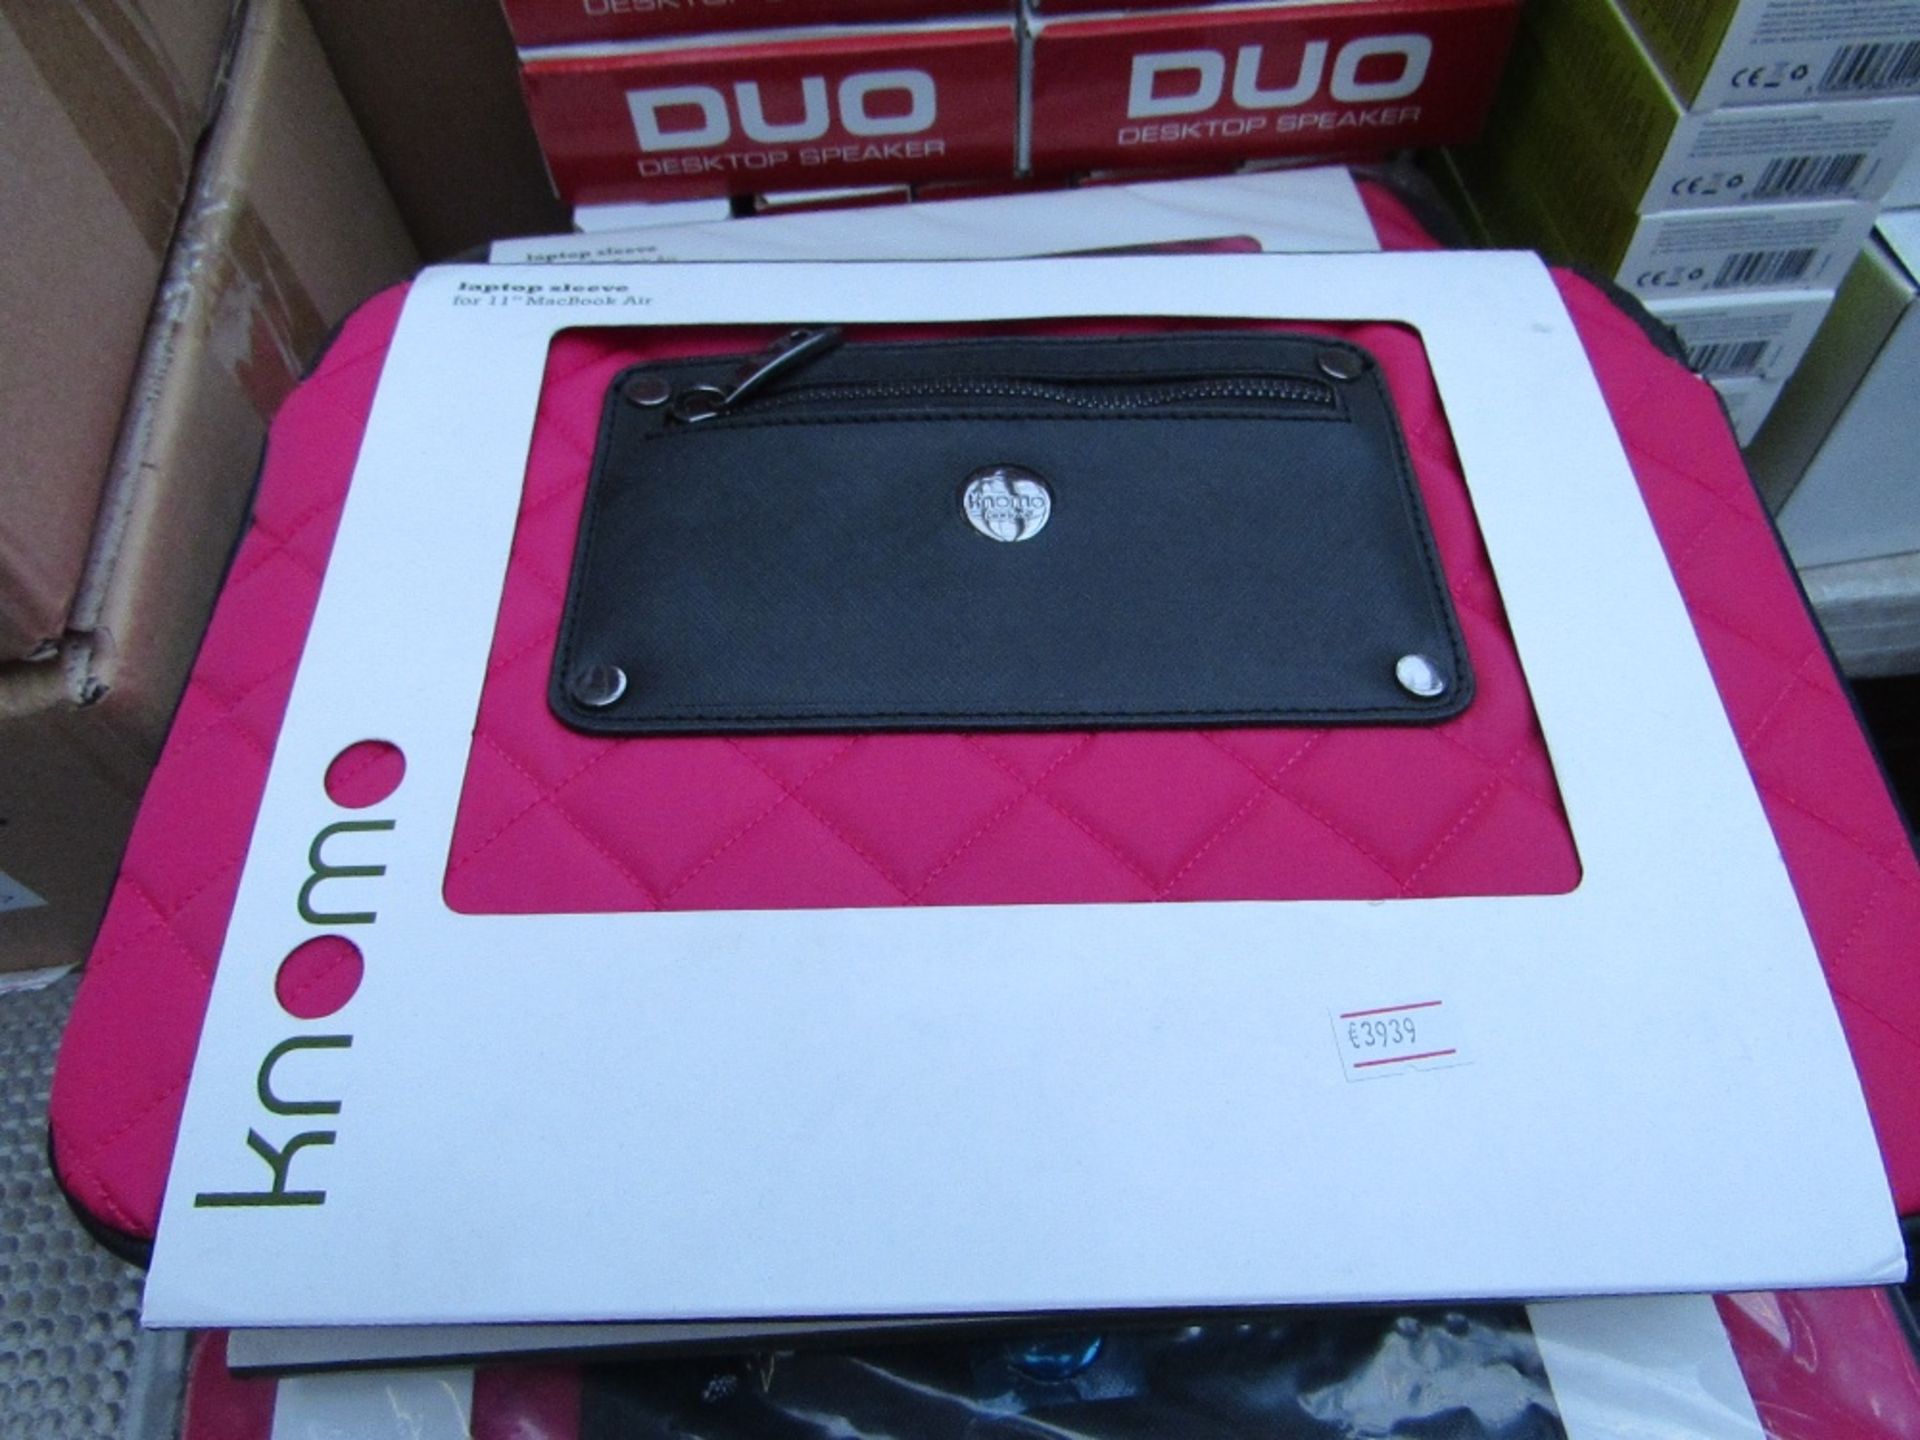 Knomo Laptop sleeve for 11" Macbook Air, new in packaging.